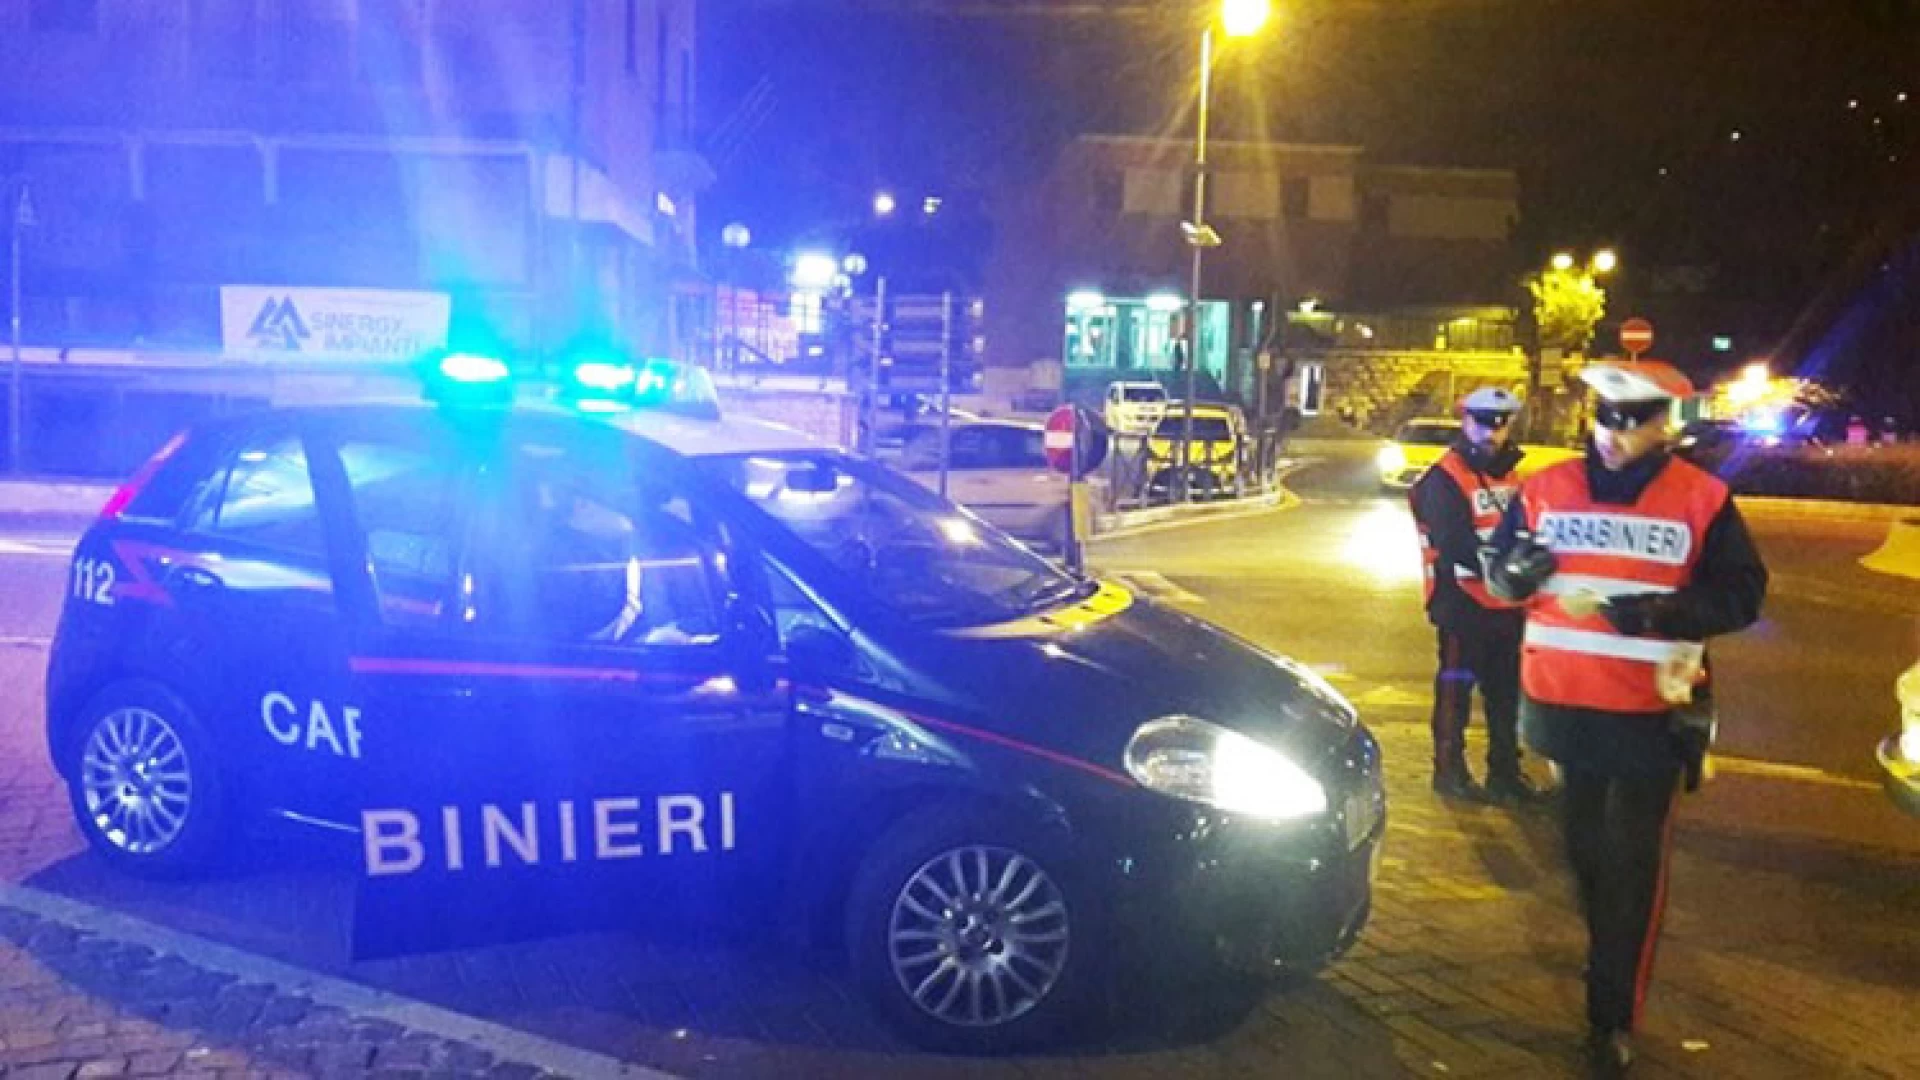 Afragola: rinvenuta in città Lancia Lybra rubata ad Isernia. Si sospetta che l’auto sia stata utilizzata per alcuni colpi messi a segno in città.